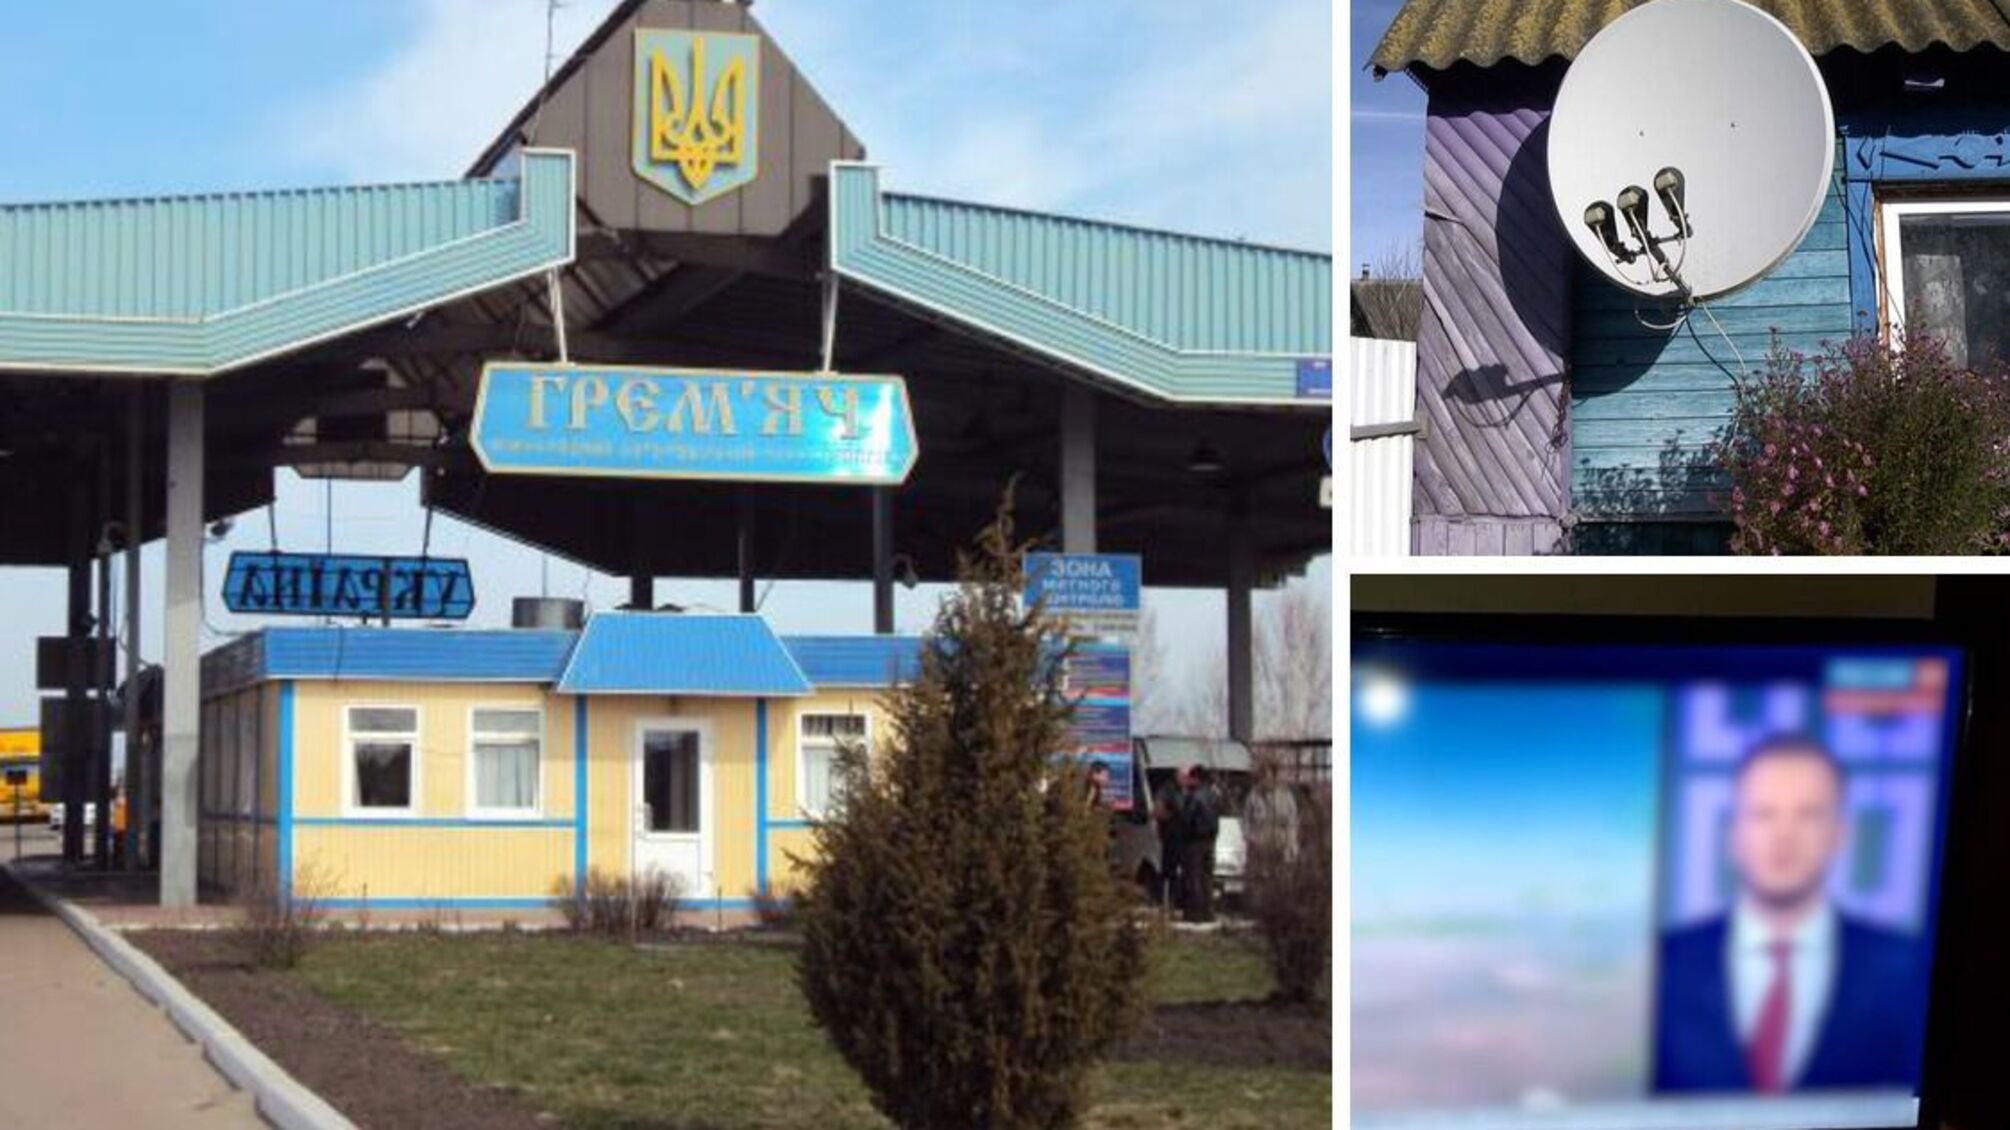 На Чернігівщині відсутні українські телеканали: жителі дивляться росТВ - що відомо